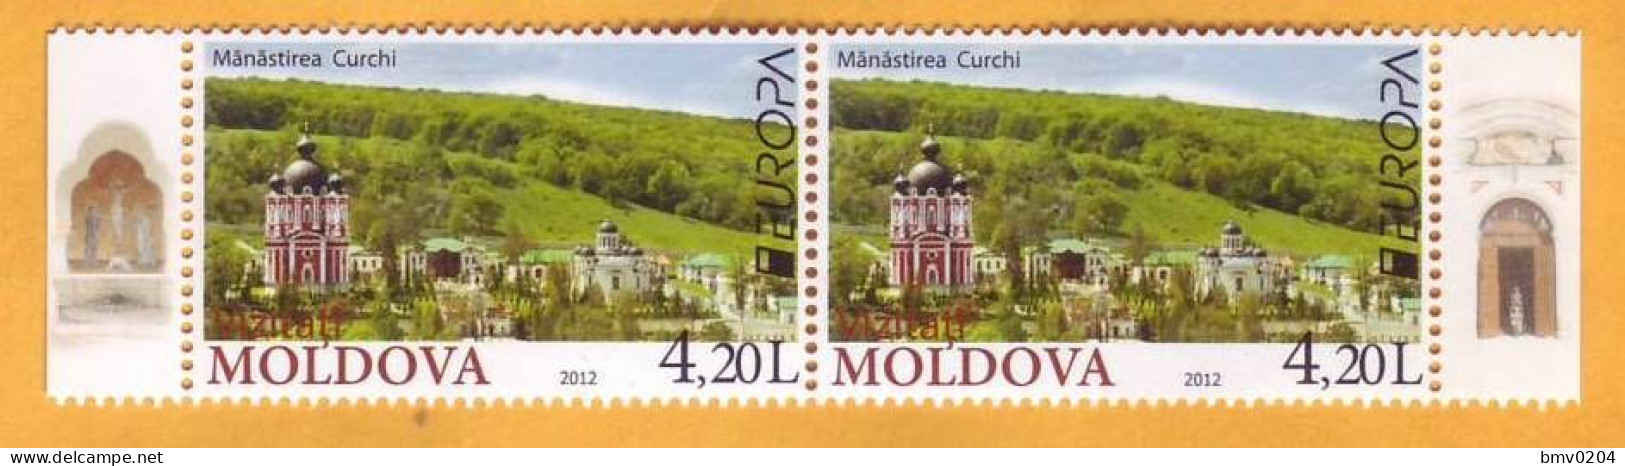 2012 Moldova Moldavie  Europa Cept  Visit Moldova. Tourism, Kurki, Christianity, 2v Mint - Moldavia